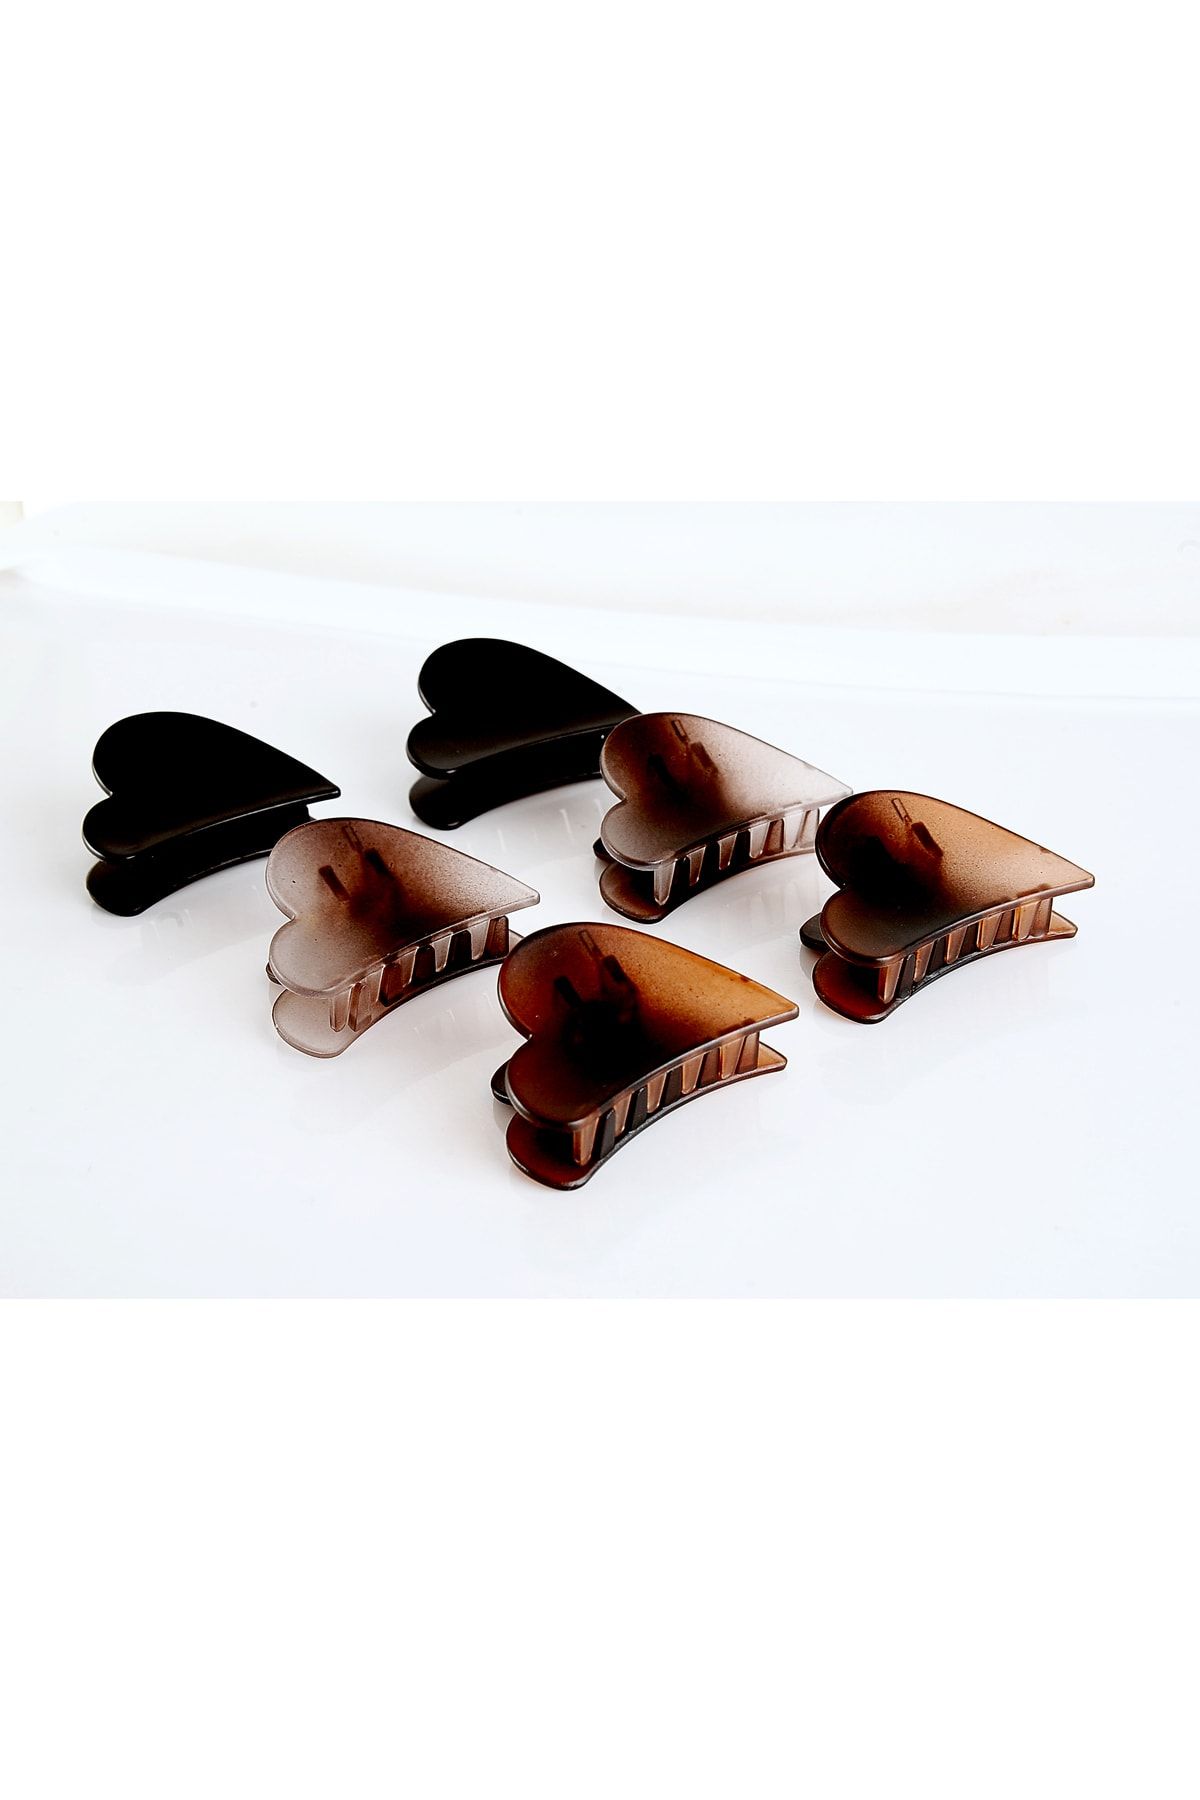 EUROMODA Kalp Tasarımlı 6lı Kahverengi ve Siyah Renkli Kaliteli Mandal Toka Seti